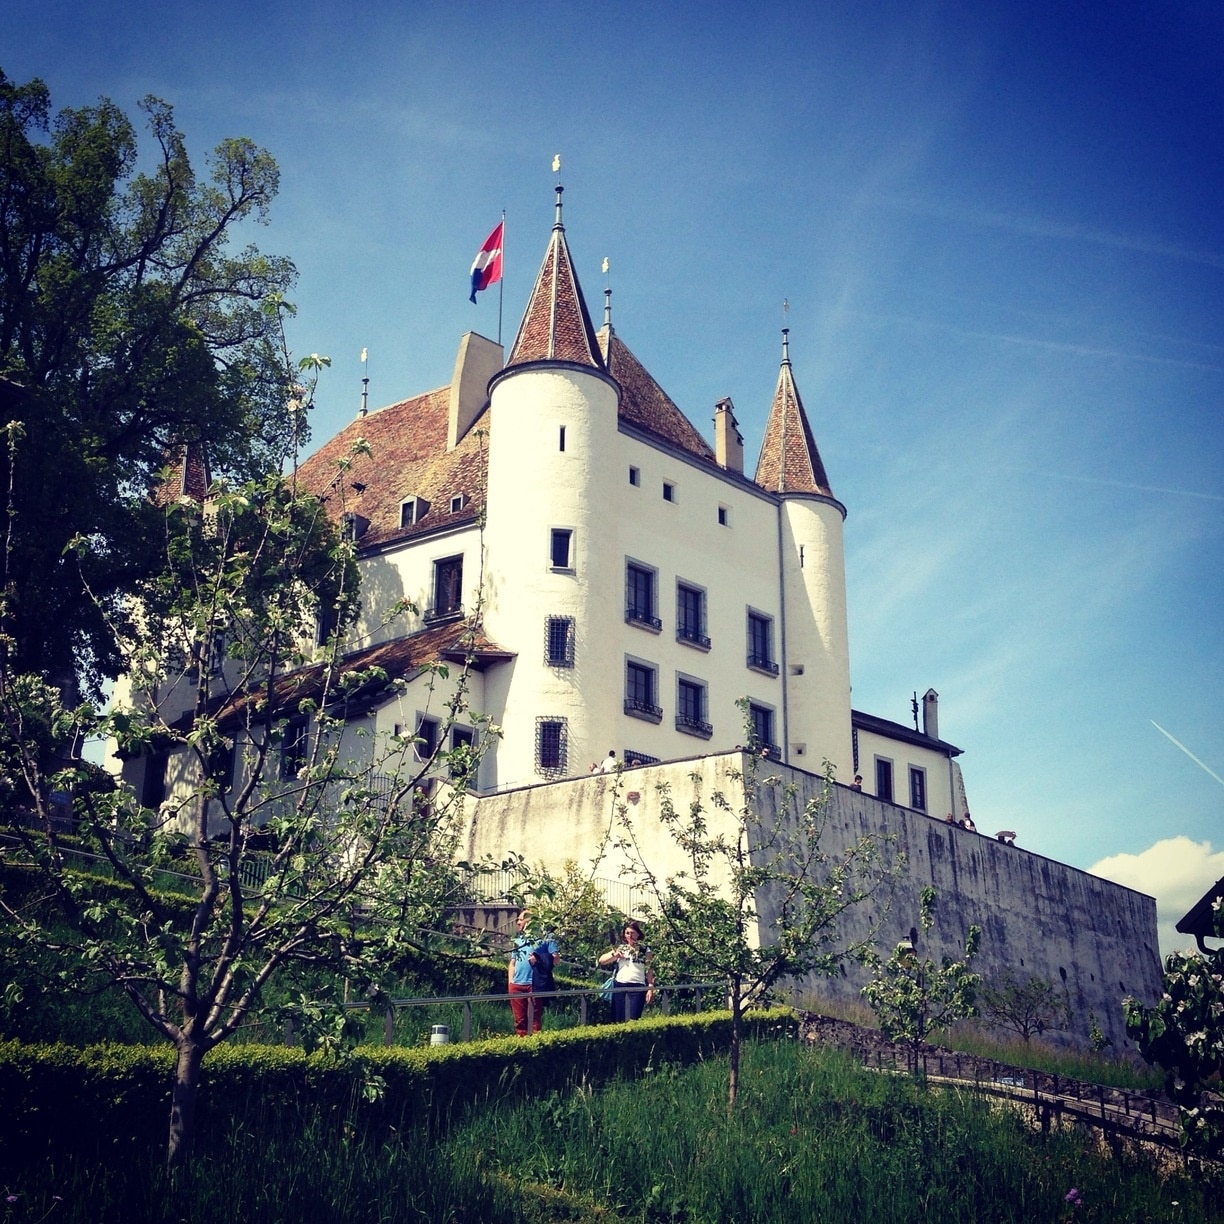 Château de Nyon, Nyon, Canton de Vaud, Suisse